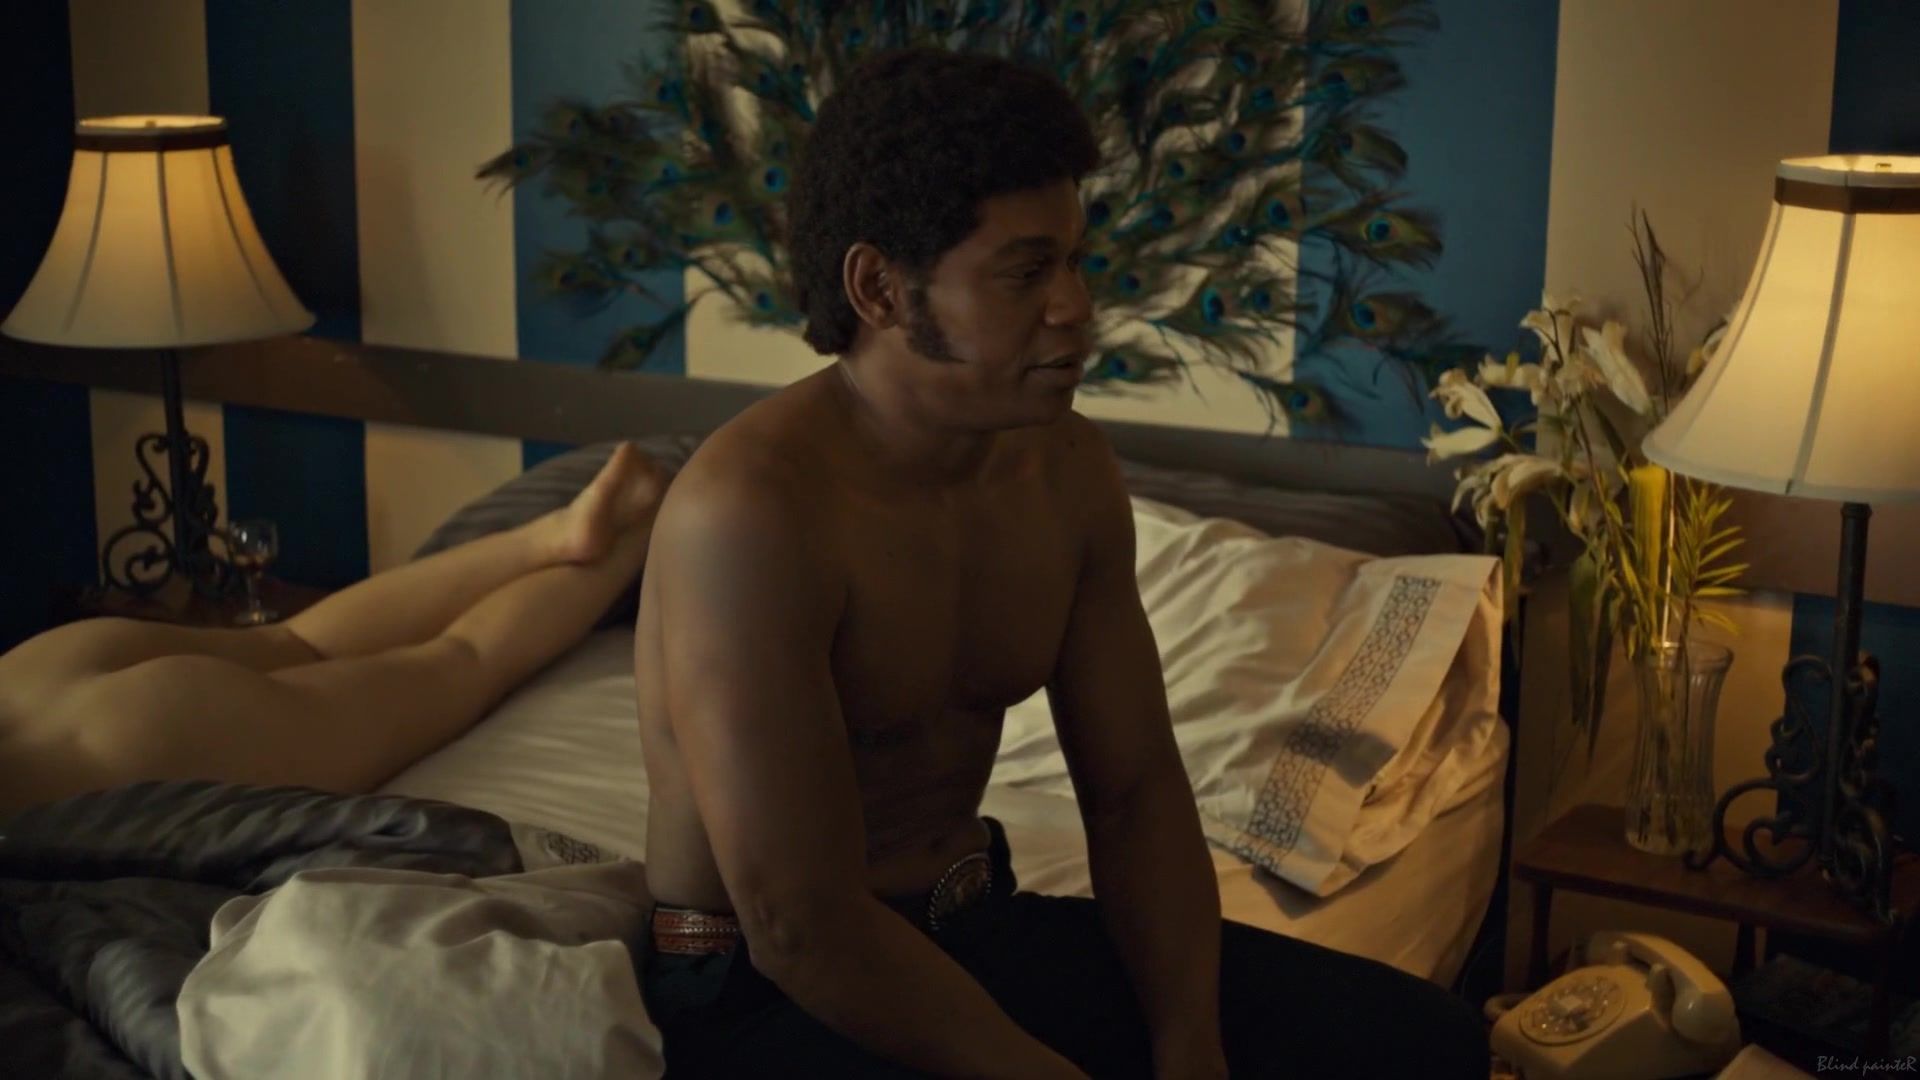 Amateur Pussy Rachel Keller naked - Fargo S02E04 (2015) Tubent